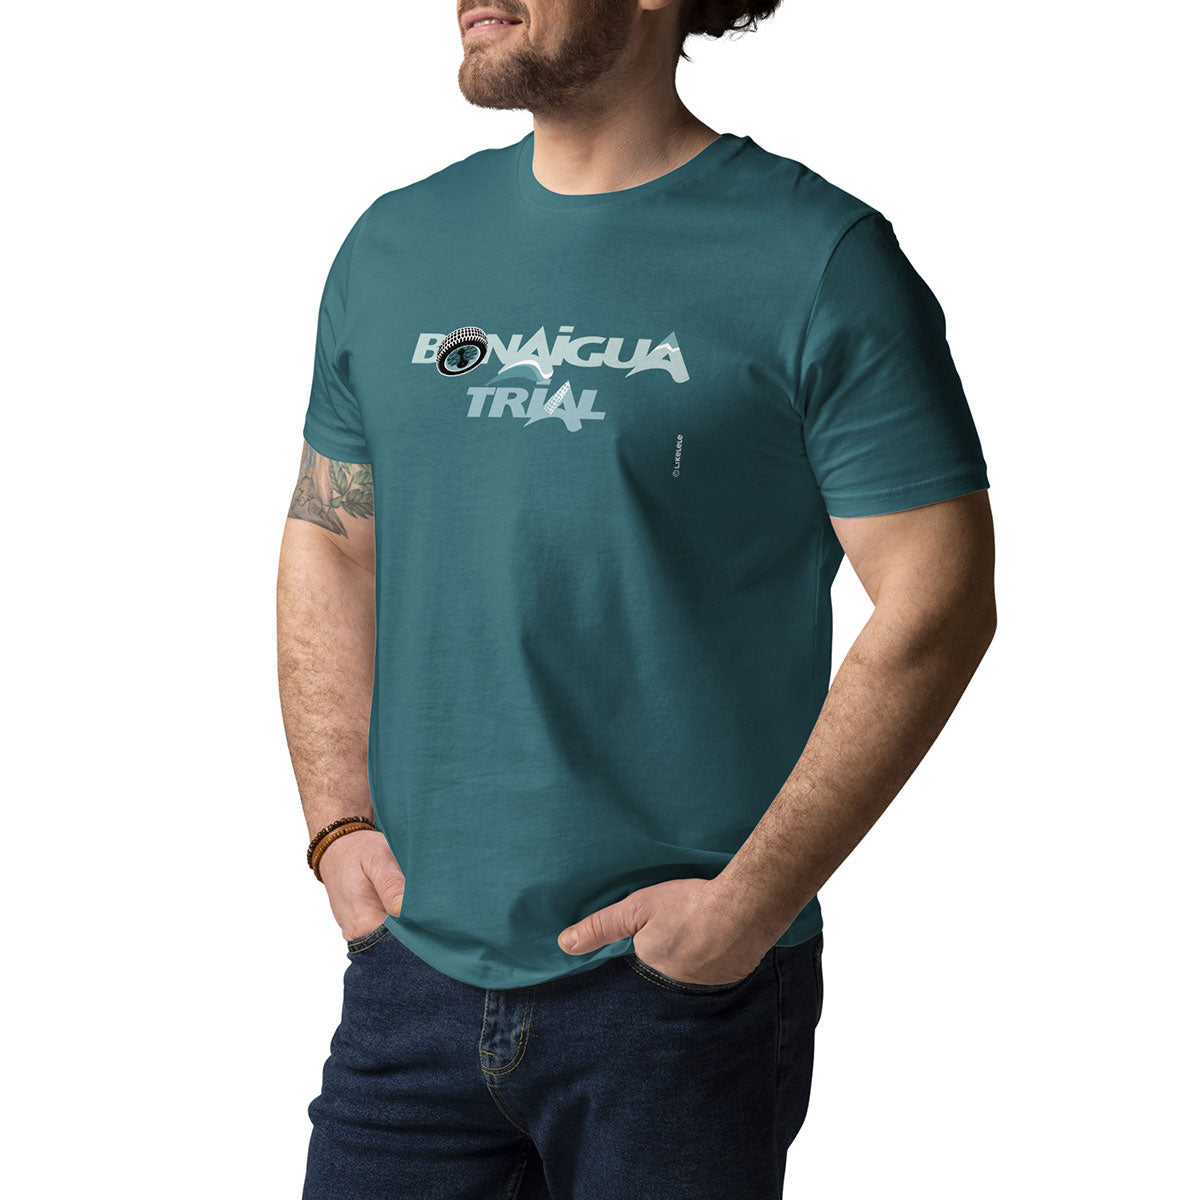 BONAIGUA TRIAL · Camiseta m/corta·Hombre/Unisex · Medium·Stargazer-171b1f